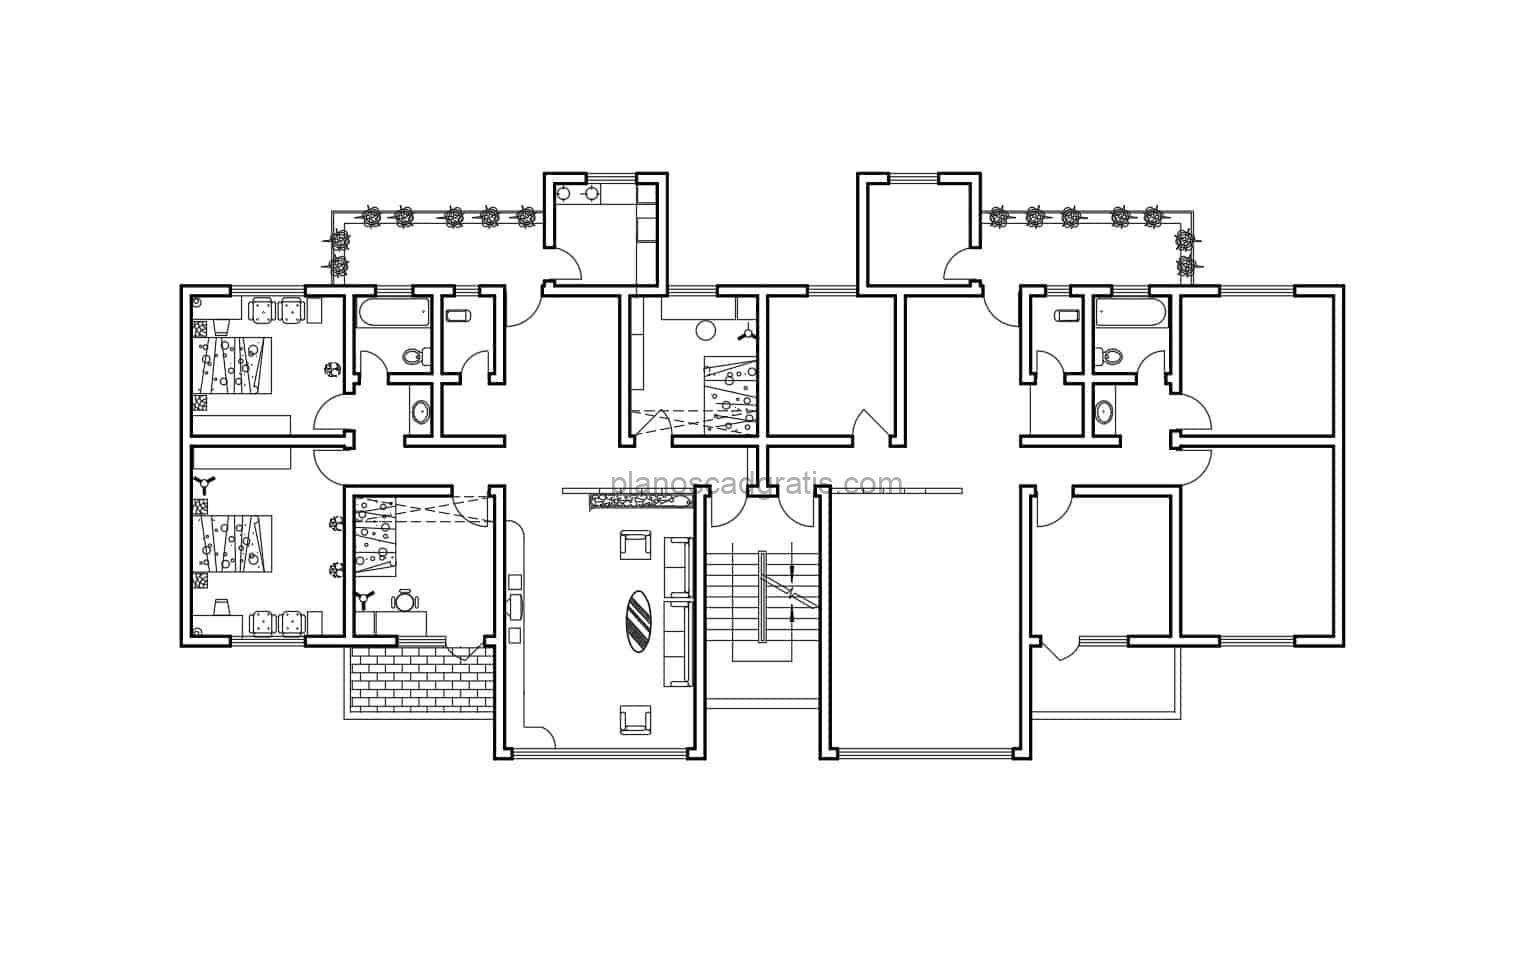 Plano de apartamento residencial dibujado en formato DWG de AutoCAD para descarga gratis, conjunto residencial de apartamento con tres habitaciones y cuatro niveles.